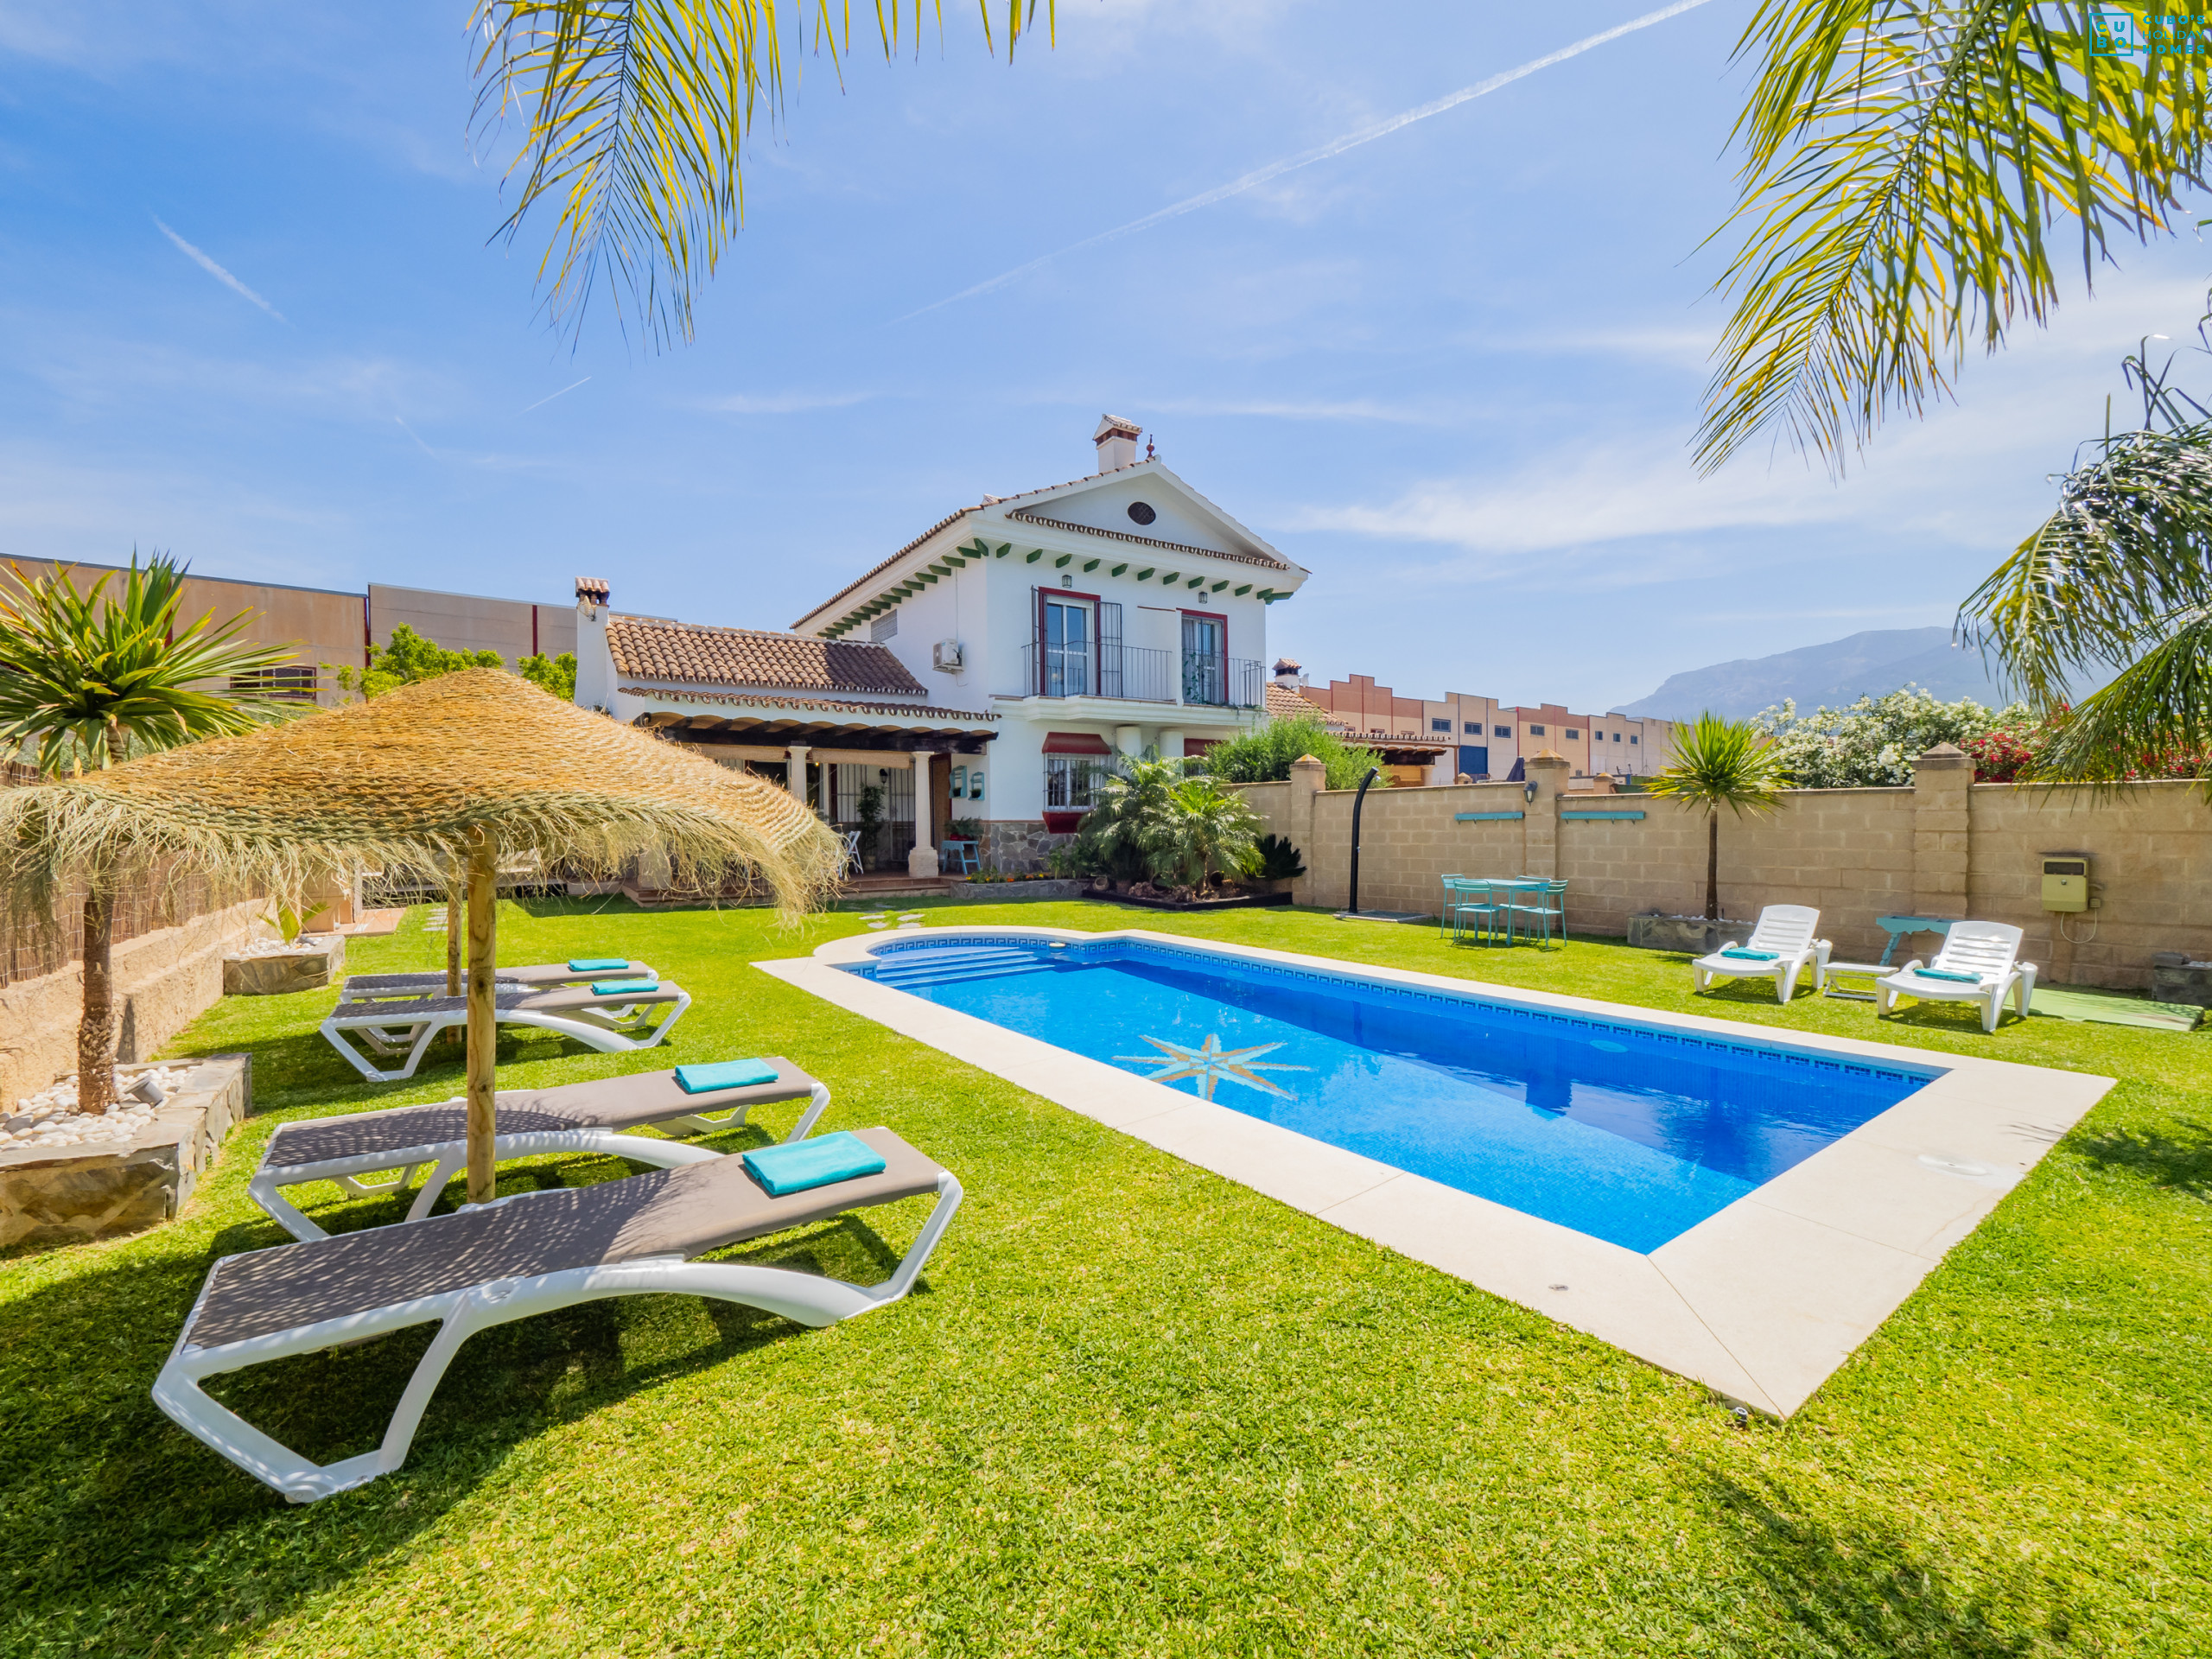 Vista de piscina privada de alojamiento rural en Málaga.